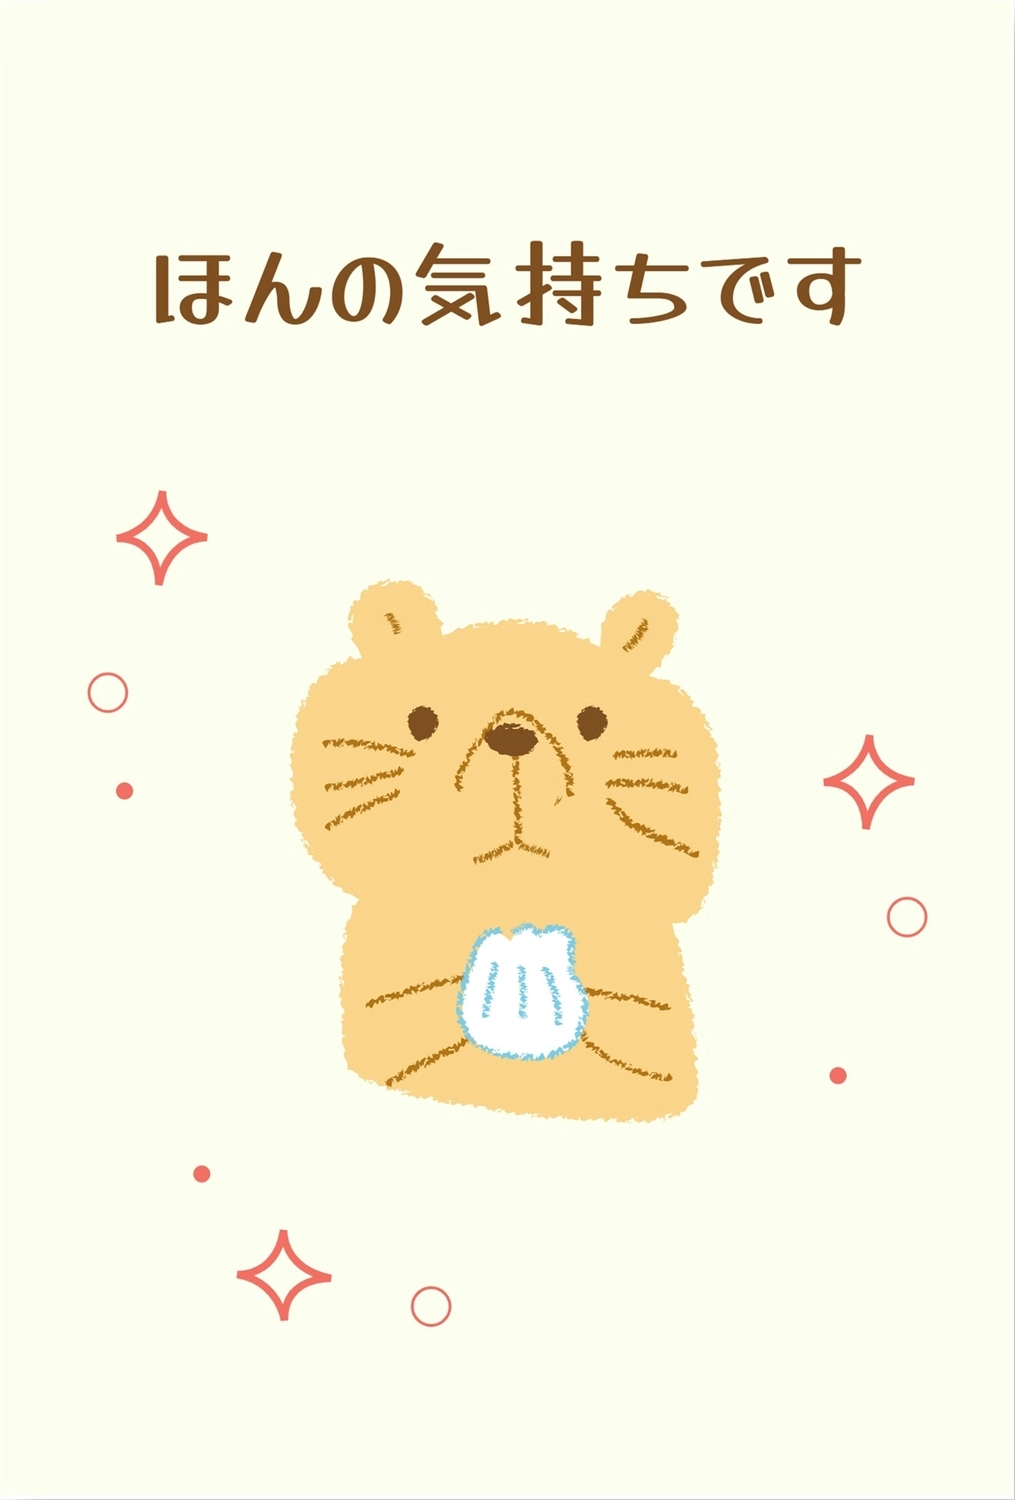 ラッコイラストのお礼カード, Summer greeting card, grateful, Thank you, message card template